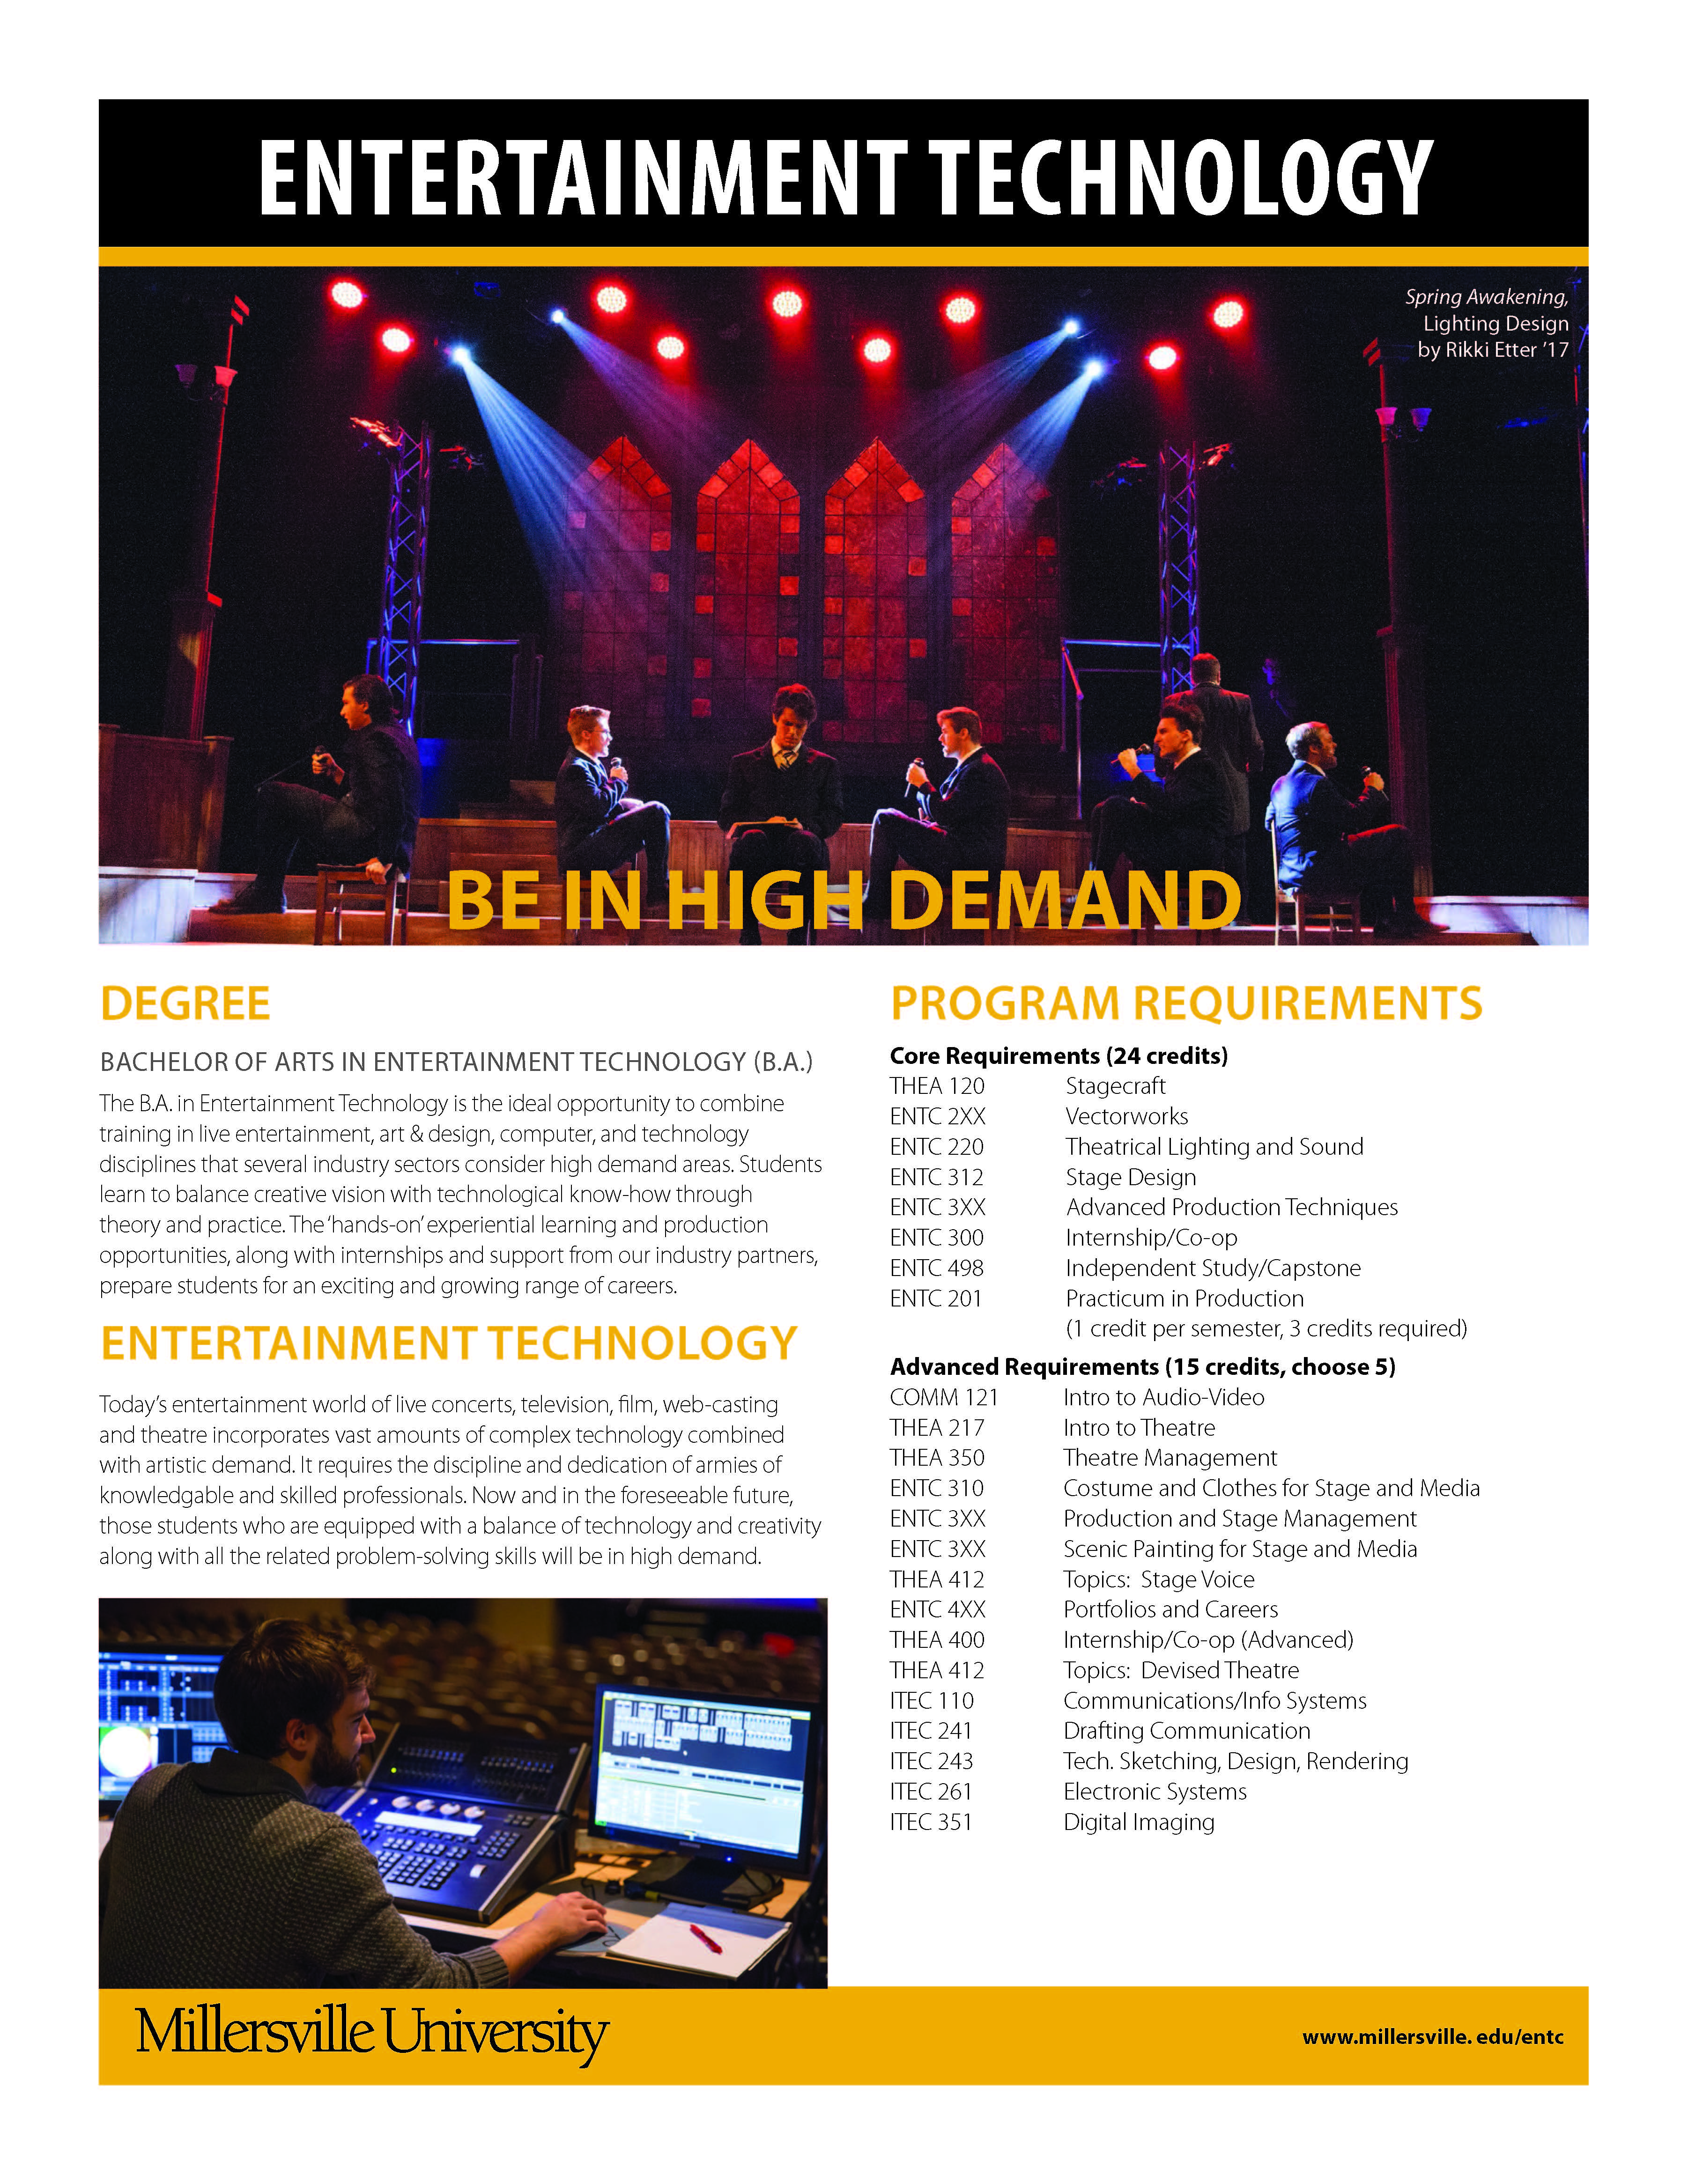 Entertainment Technology Cut Sheet